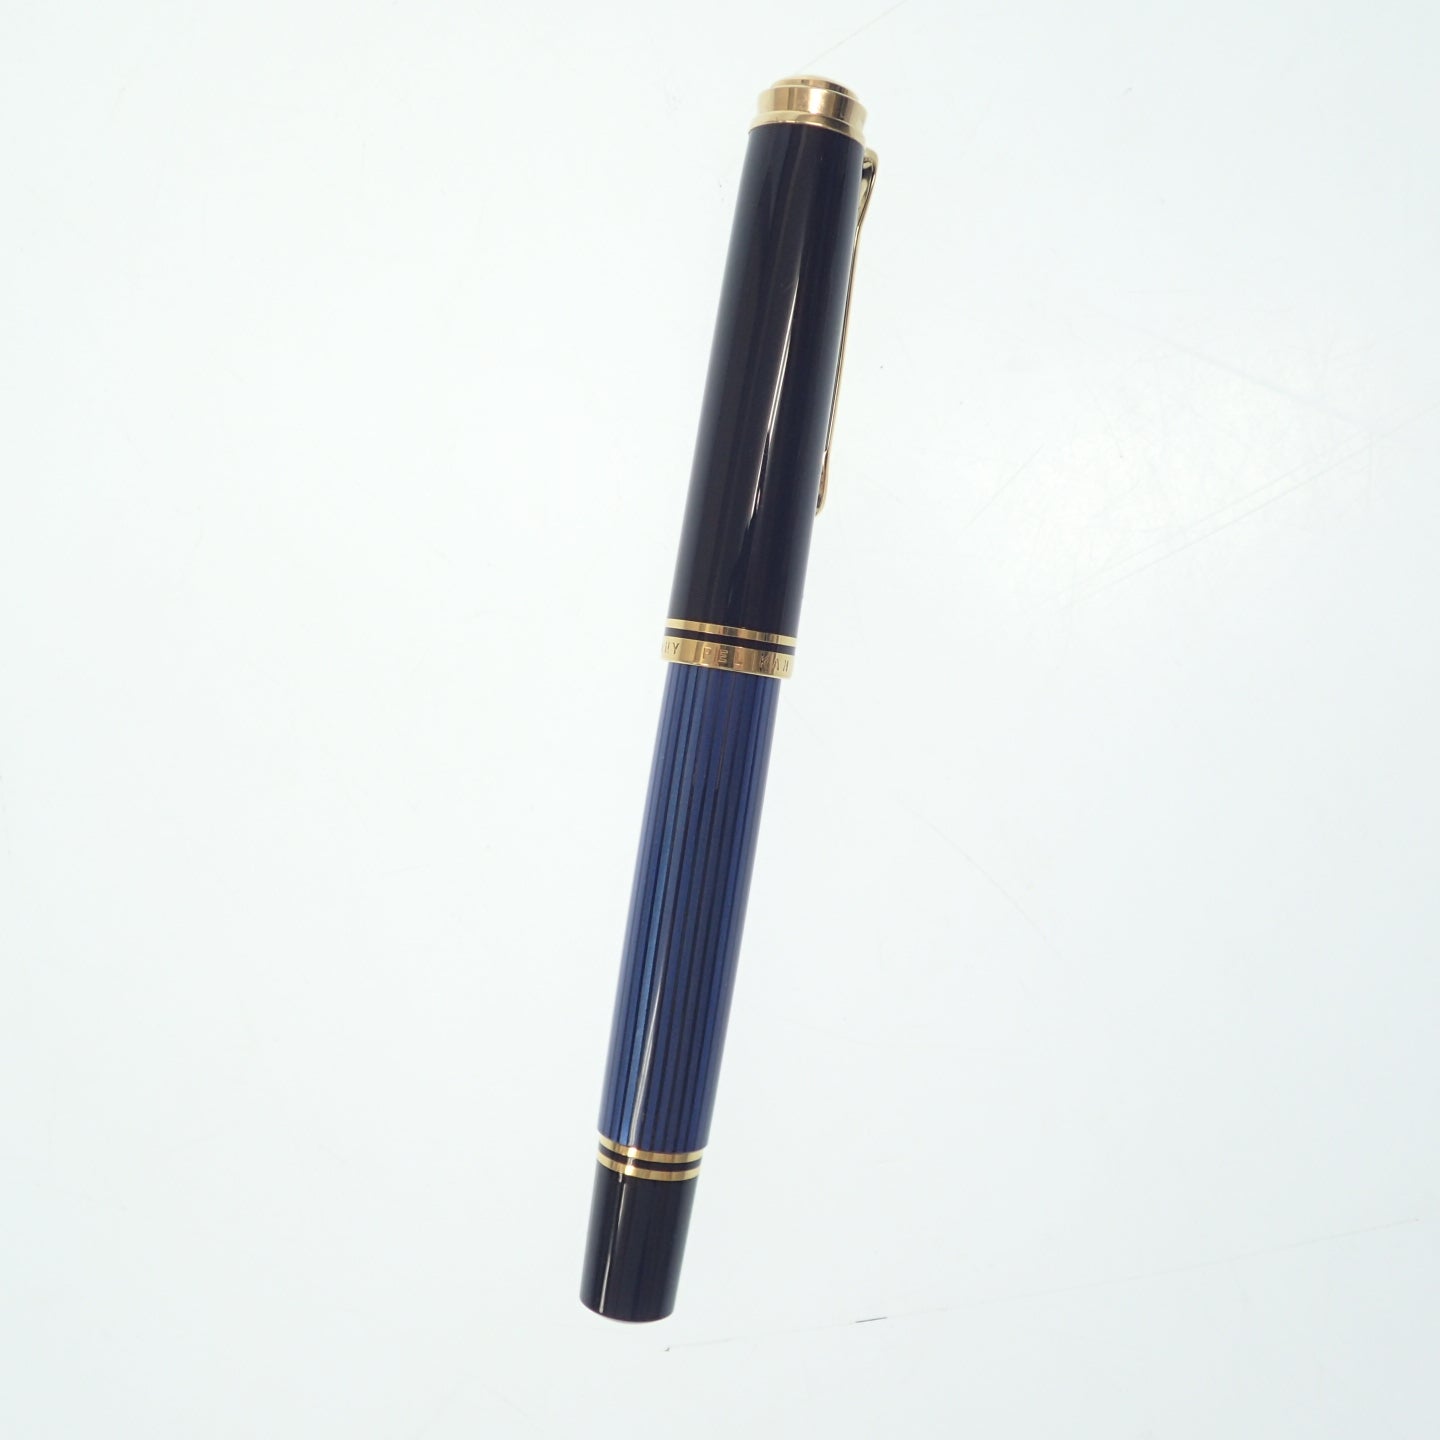 状况良好 ◆ 百利金钢笔 M800 Souveran 笔尖 18C-750 F 条纹蓝色和黑色 PELIKAN SOUVERAN [AFI11] 